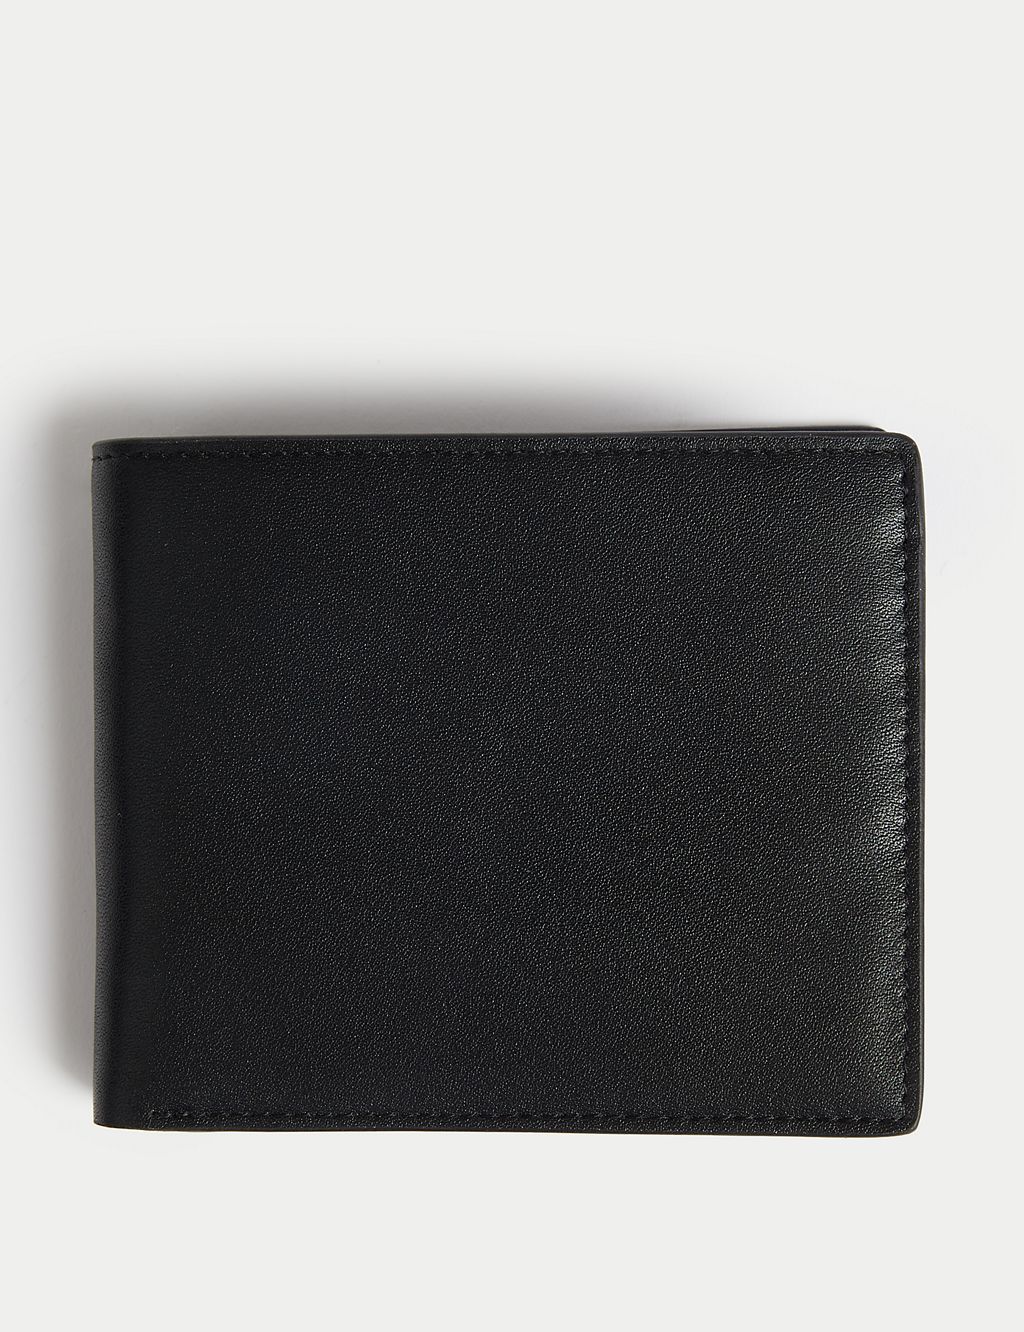 Leather Cardsafe™ Wallet 3 of 3